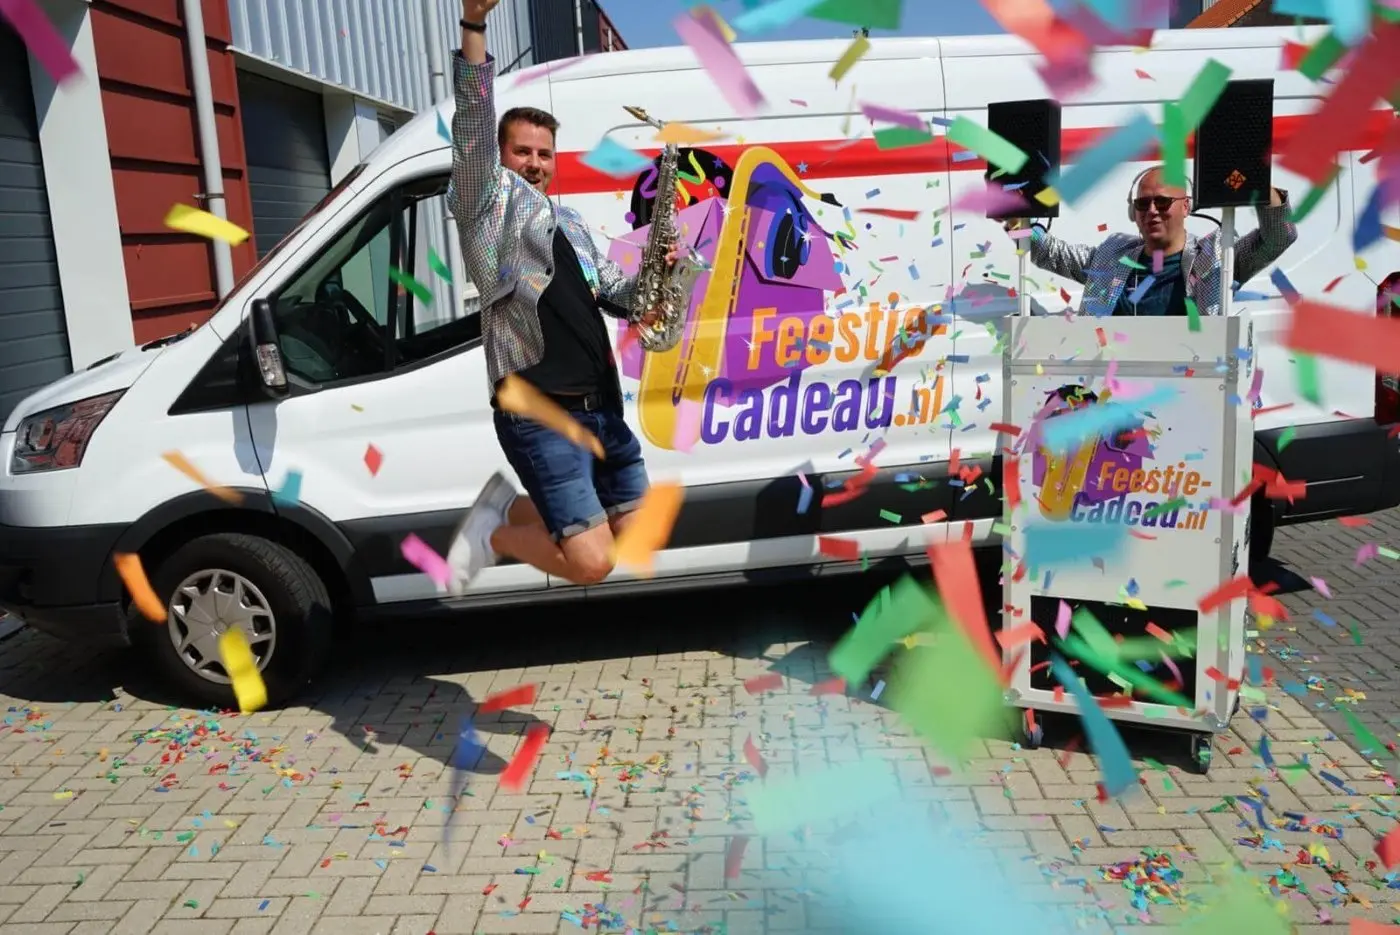 saxofonist springt in de lucht met confetti voor een disco bus met een mobiel dj booth met dj